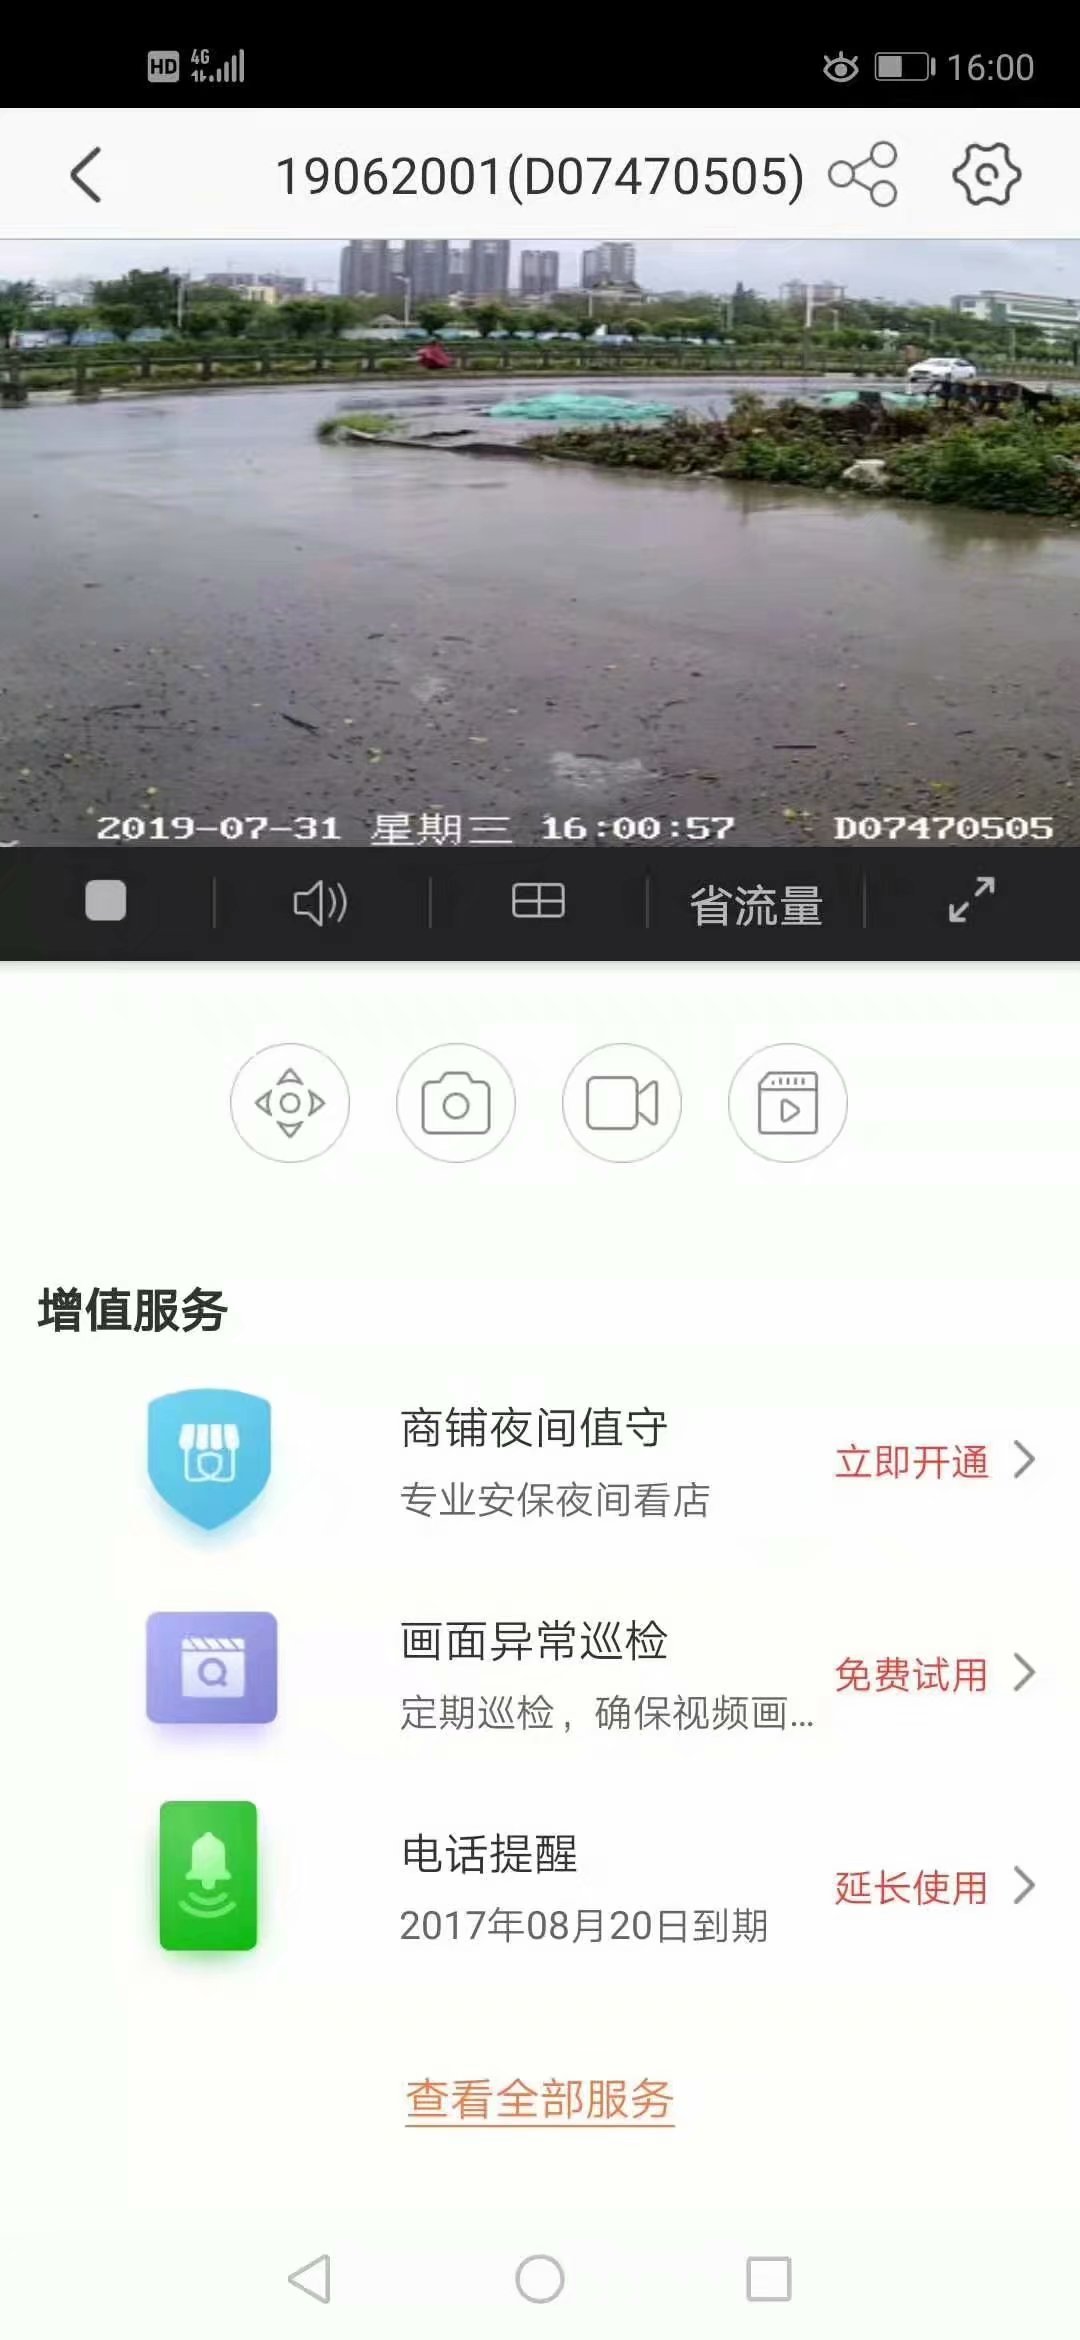 深圳市龙岗区工地噪音扬尘监测系统CCEP资质厂家设备